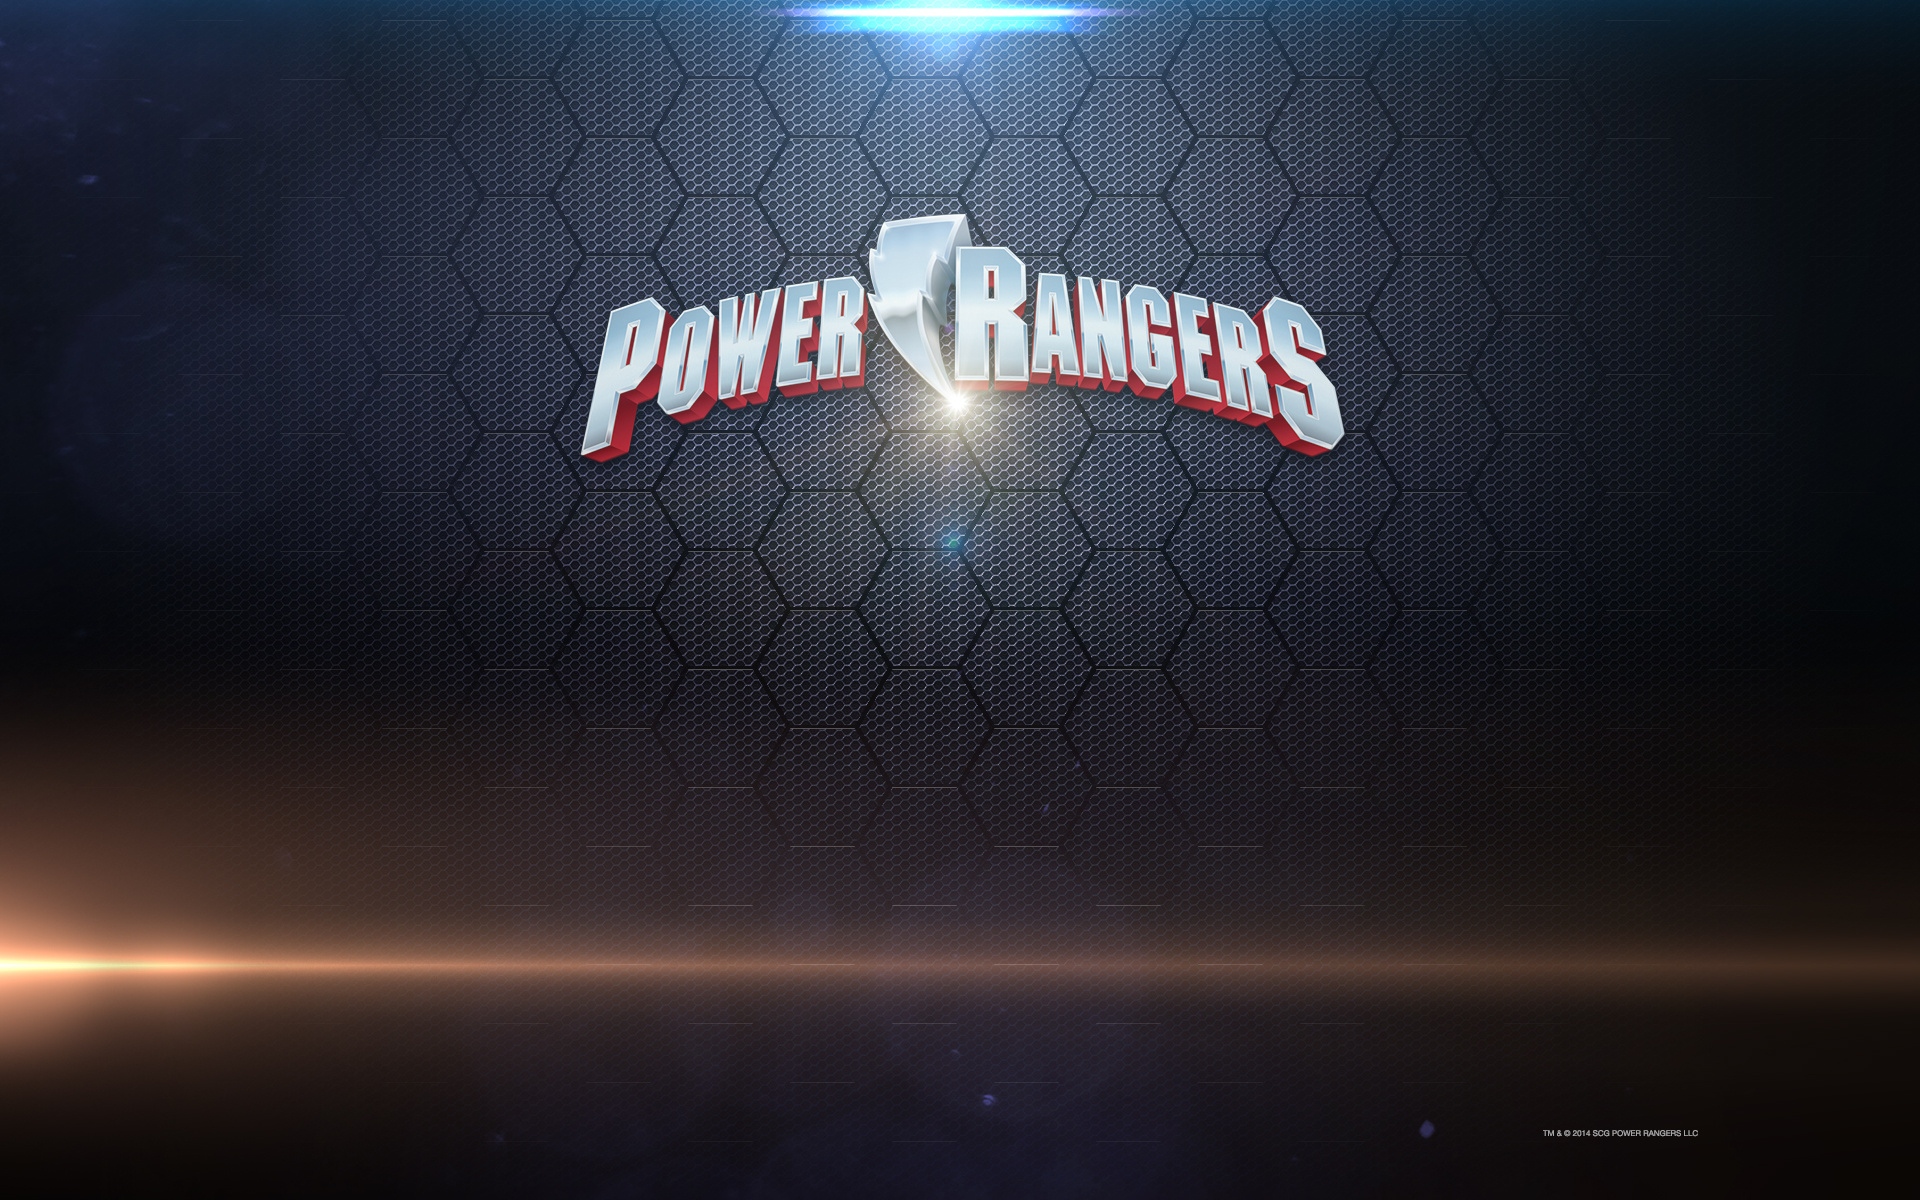 Logo Power Ranger Wallpapers